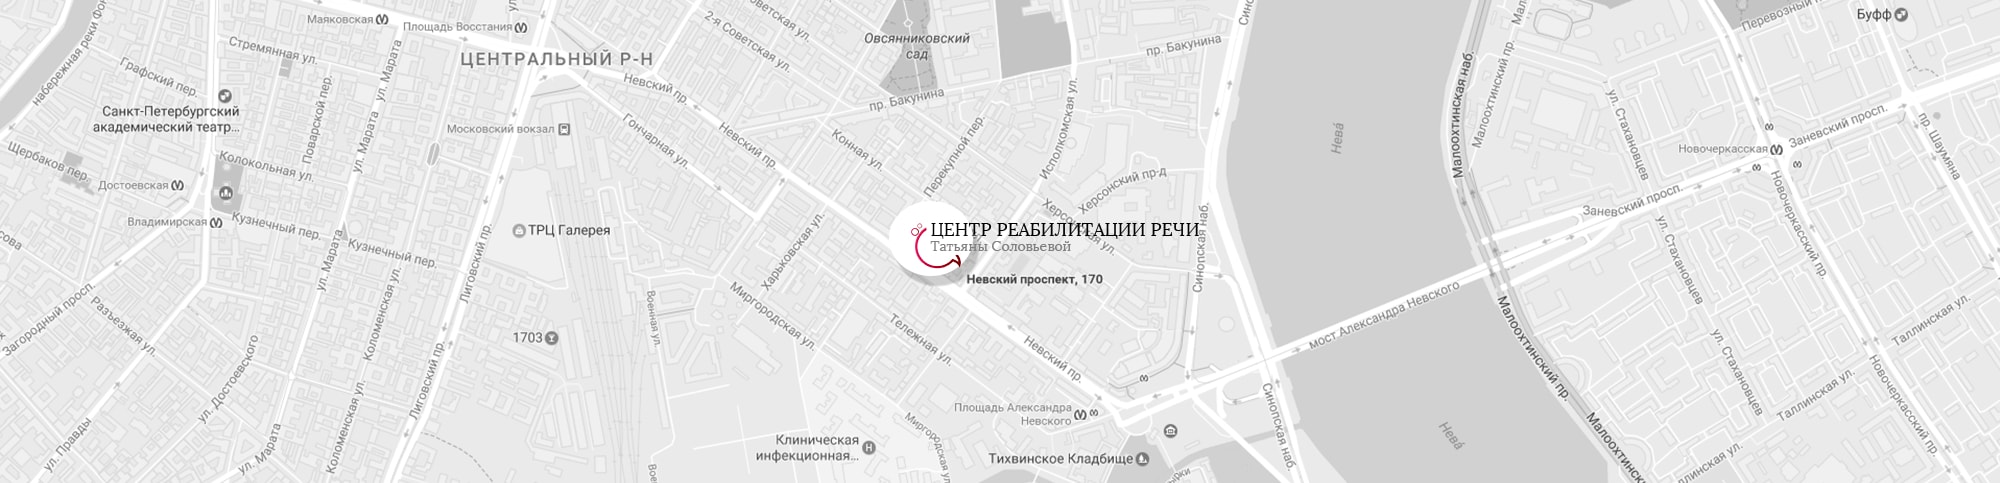 Карта расположения Центра реабилитации речи Татьяны Соловьевой